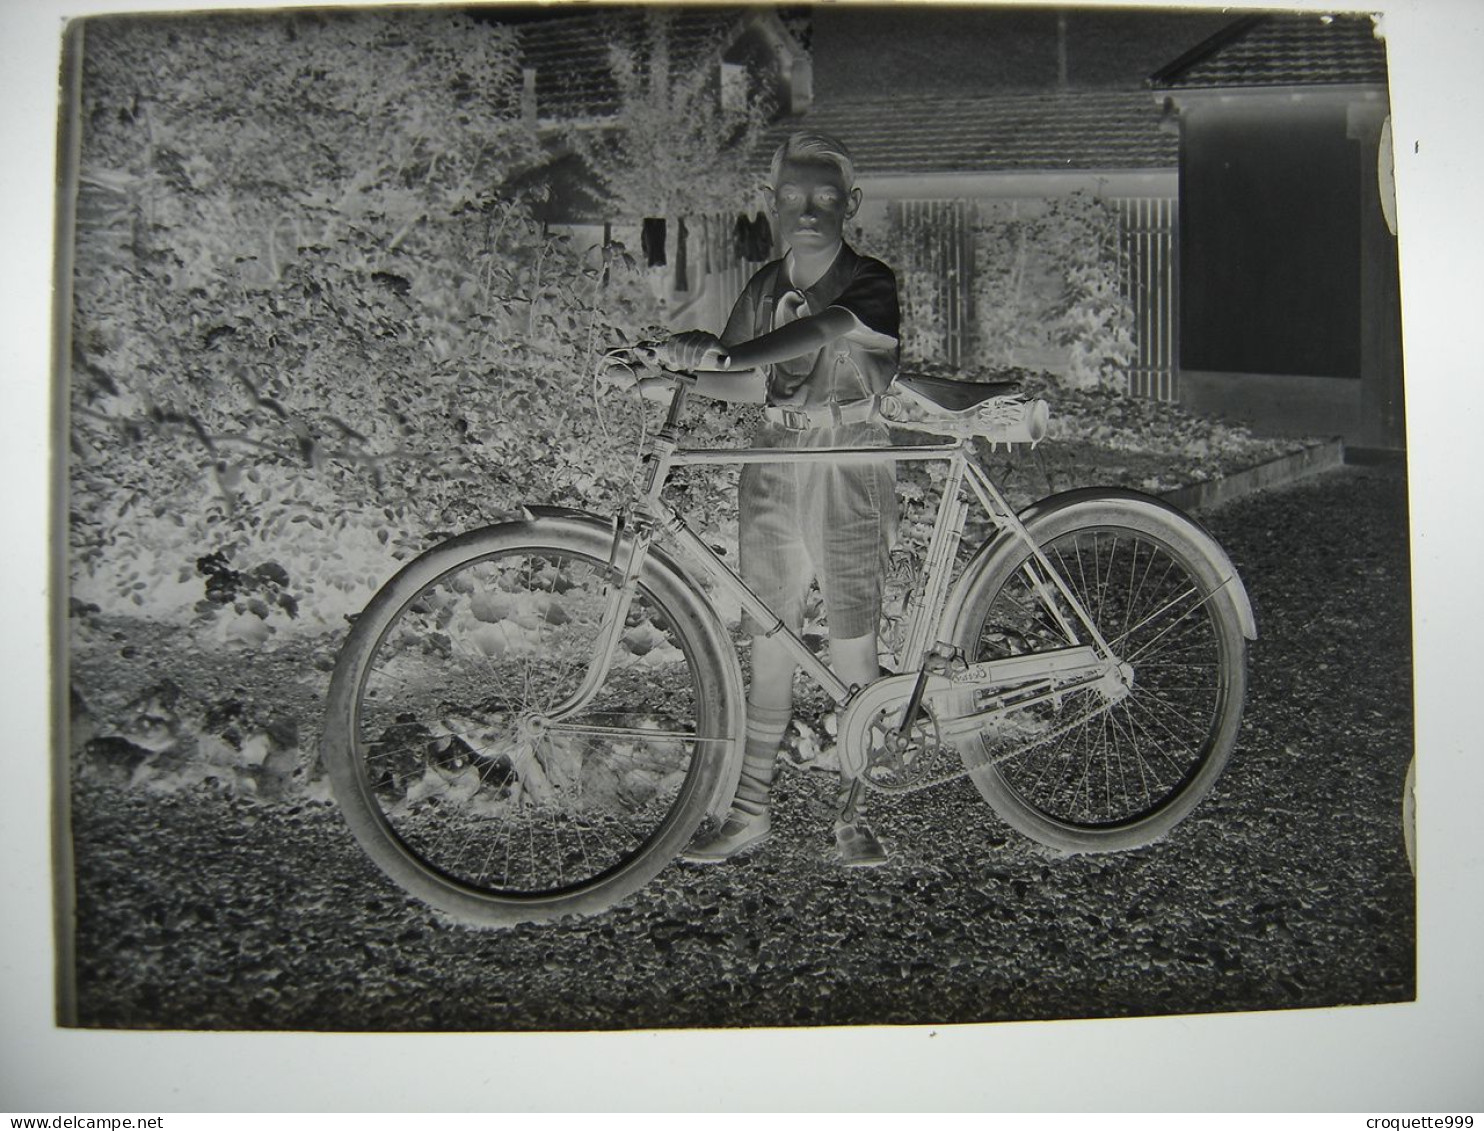 Annees 30 Photographie Plaque Verre NEGATIF Enfant Avec Bicyclette Velo 9 X 12 Cm - Glasplaten